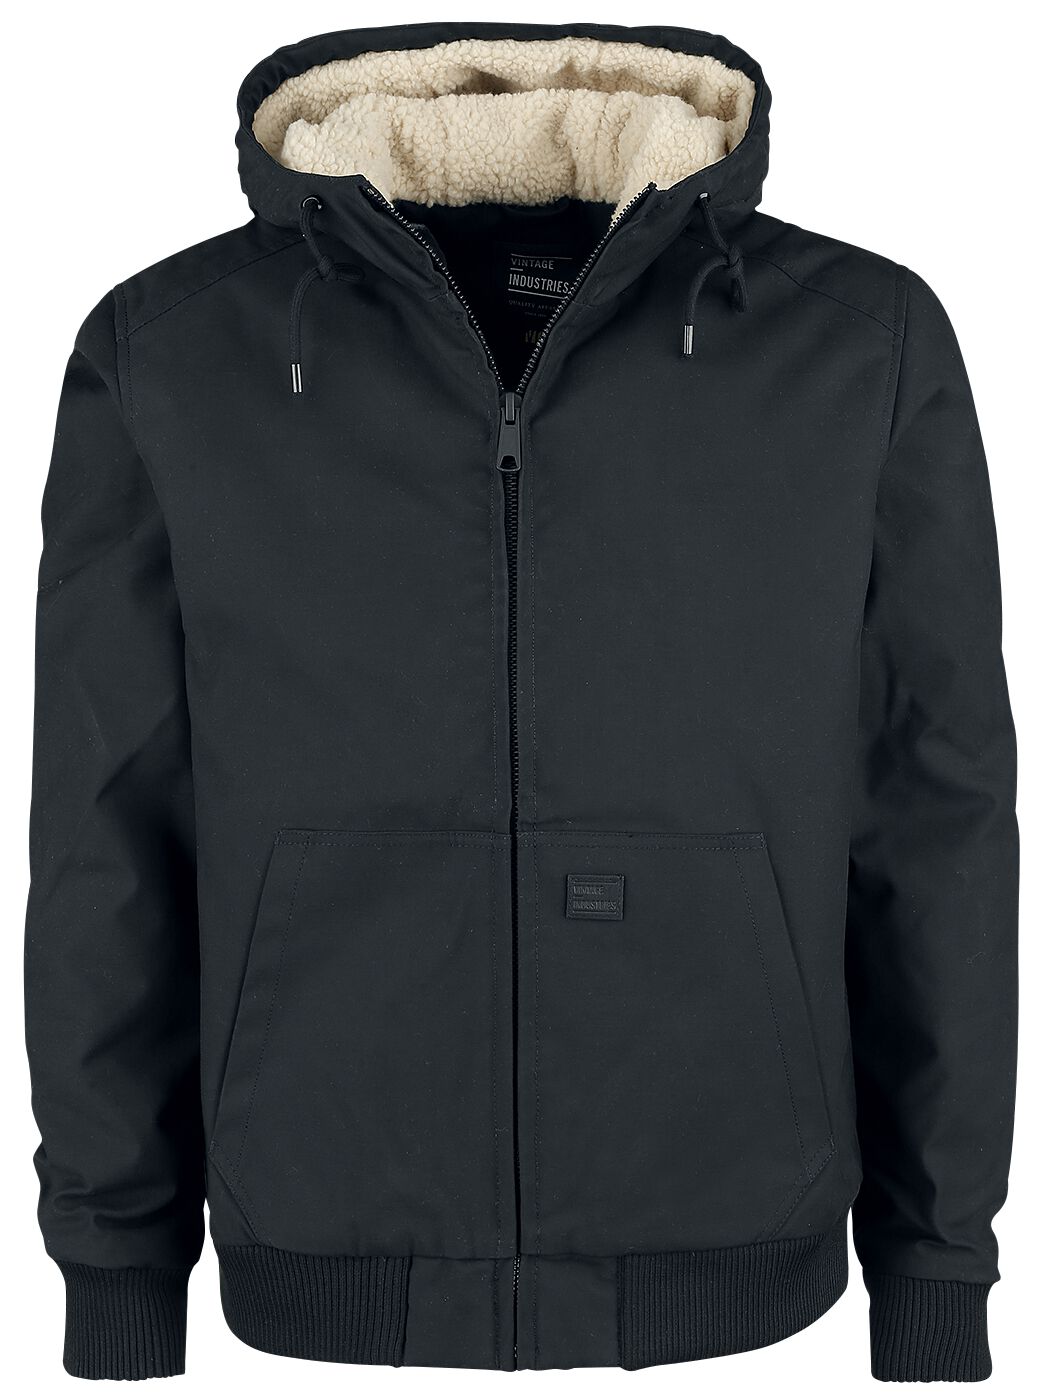 Vintage Industries Winterjacke - Datton Jacket - XL bis 3XL - für Männer - Größe XL - schwarz